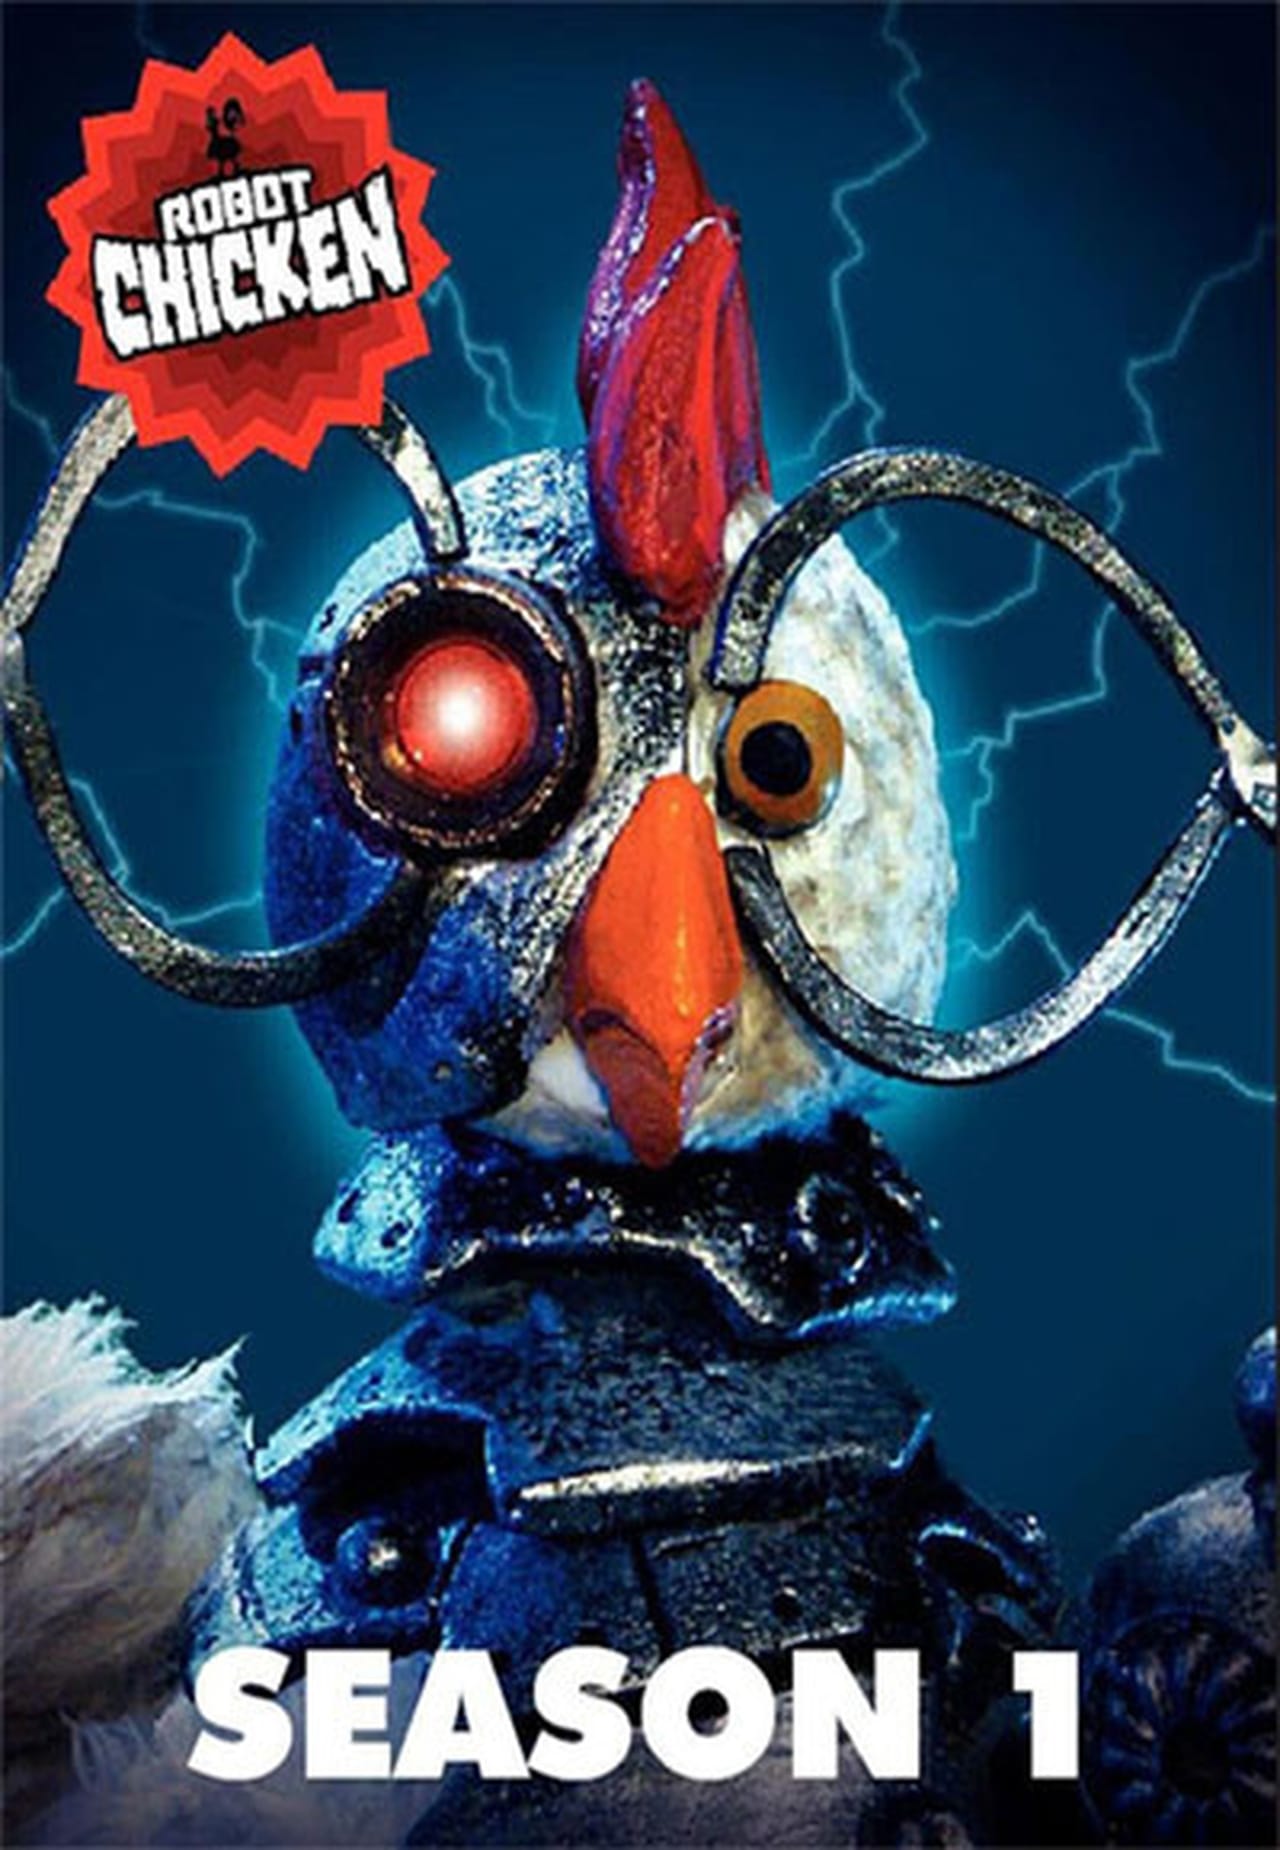 Robot Chicken (2005)